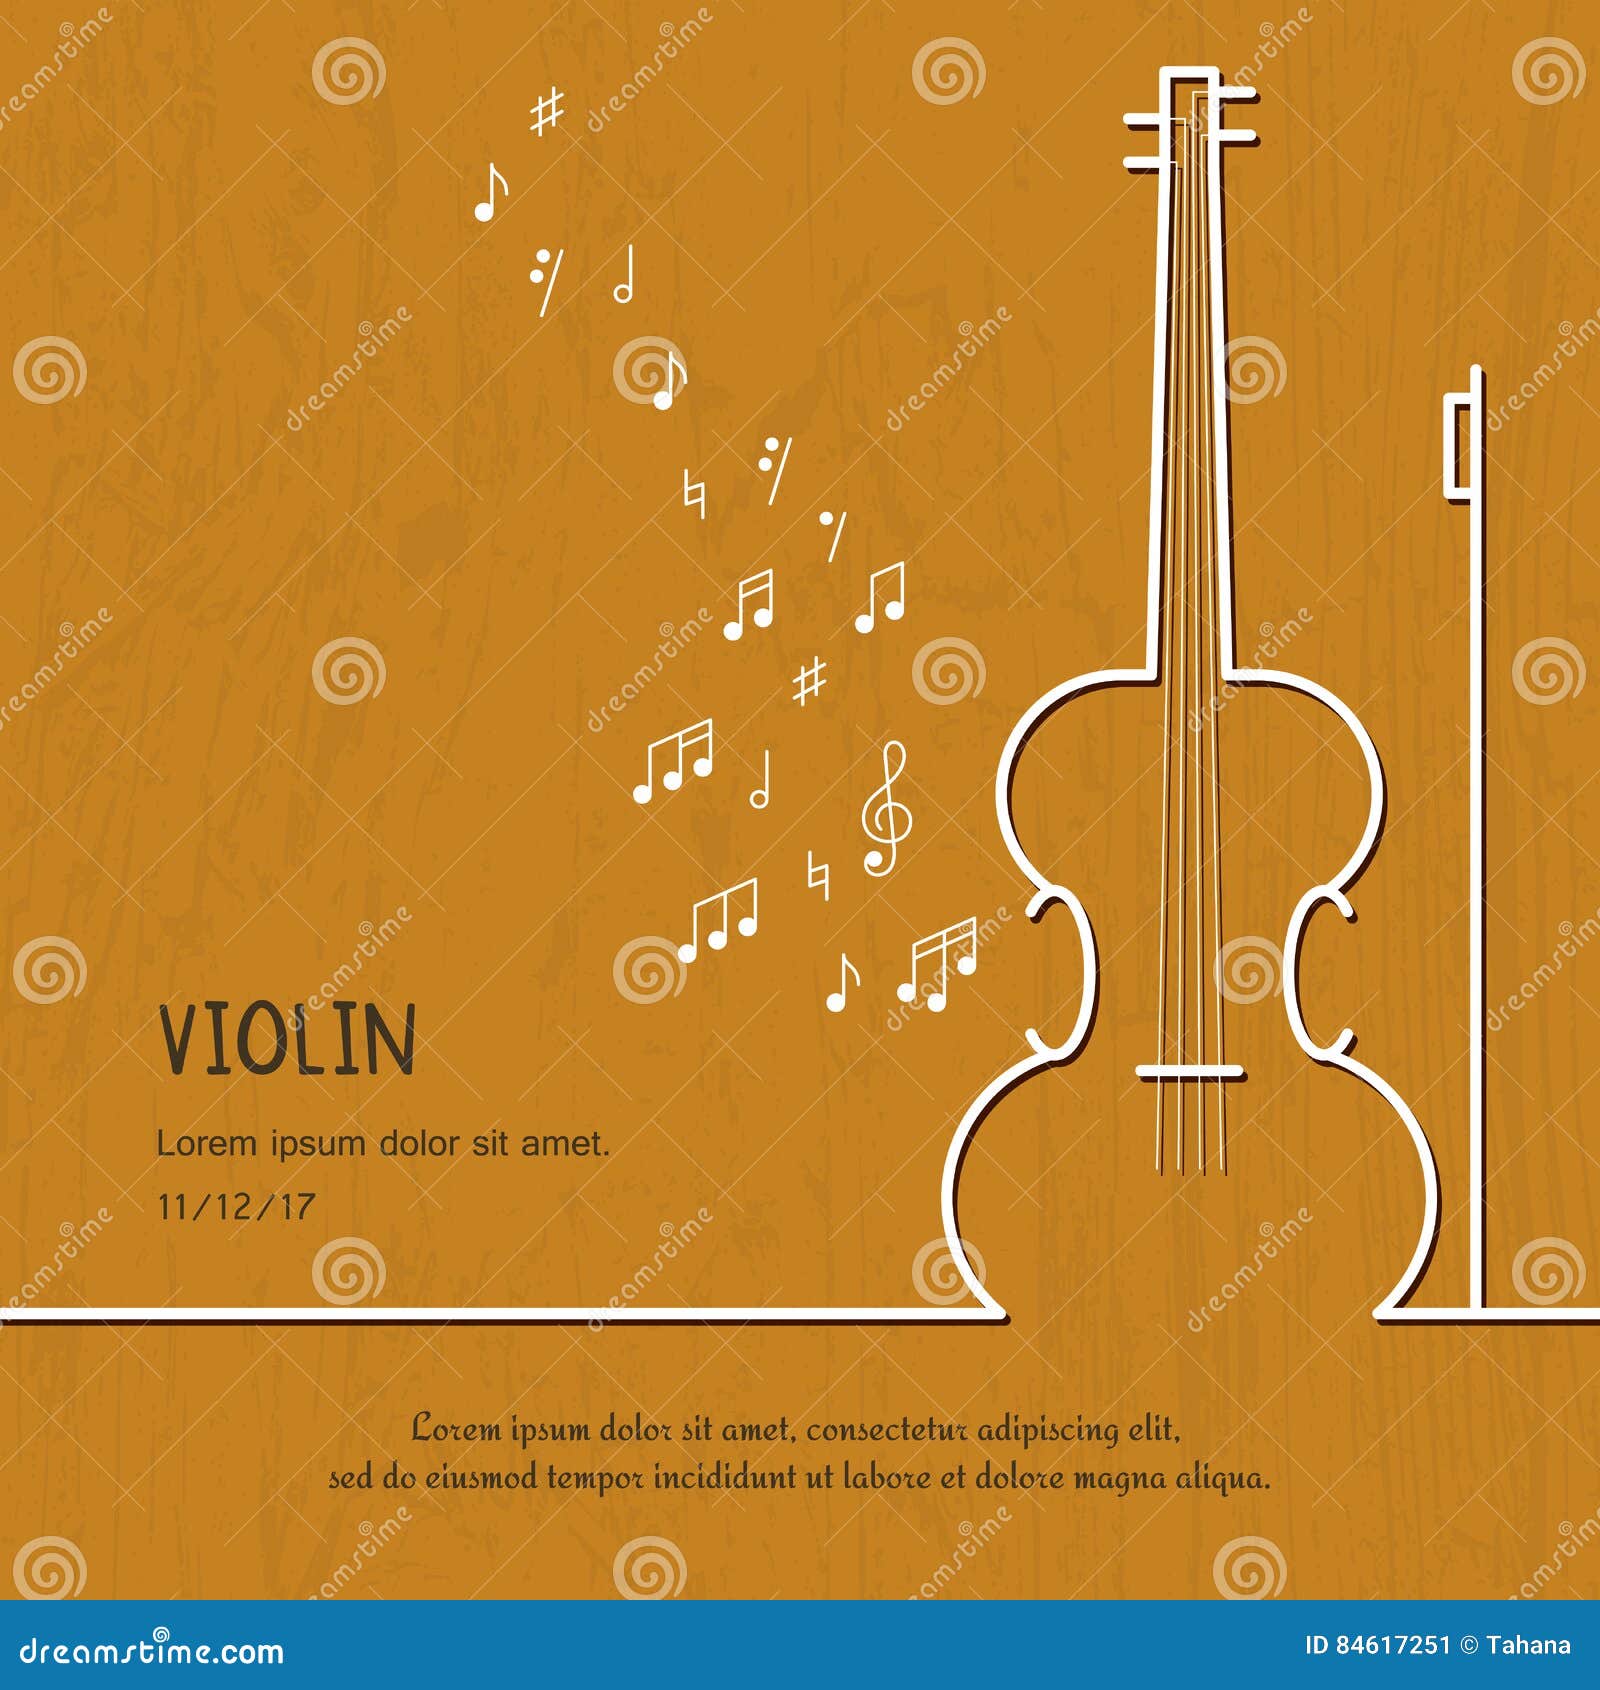 Violin: Âm nhạc cùng Violin mang đến cho chúng ta một trải nghiệm âm nhạc đầy cảm xúc. Hãy cùng khám phá hình ảnh những nghệ sĩ violin tài năng và những buổi biểu diễn đầy ấn tượng.